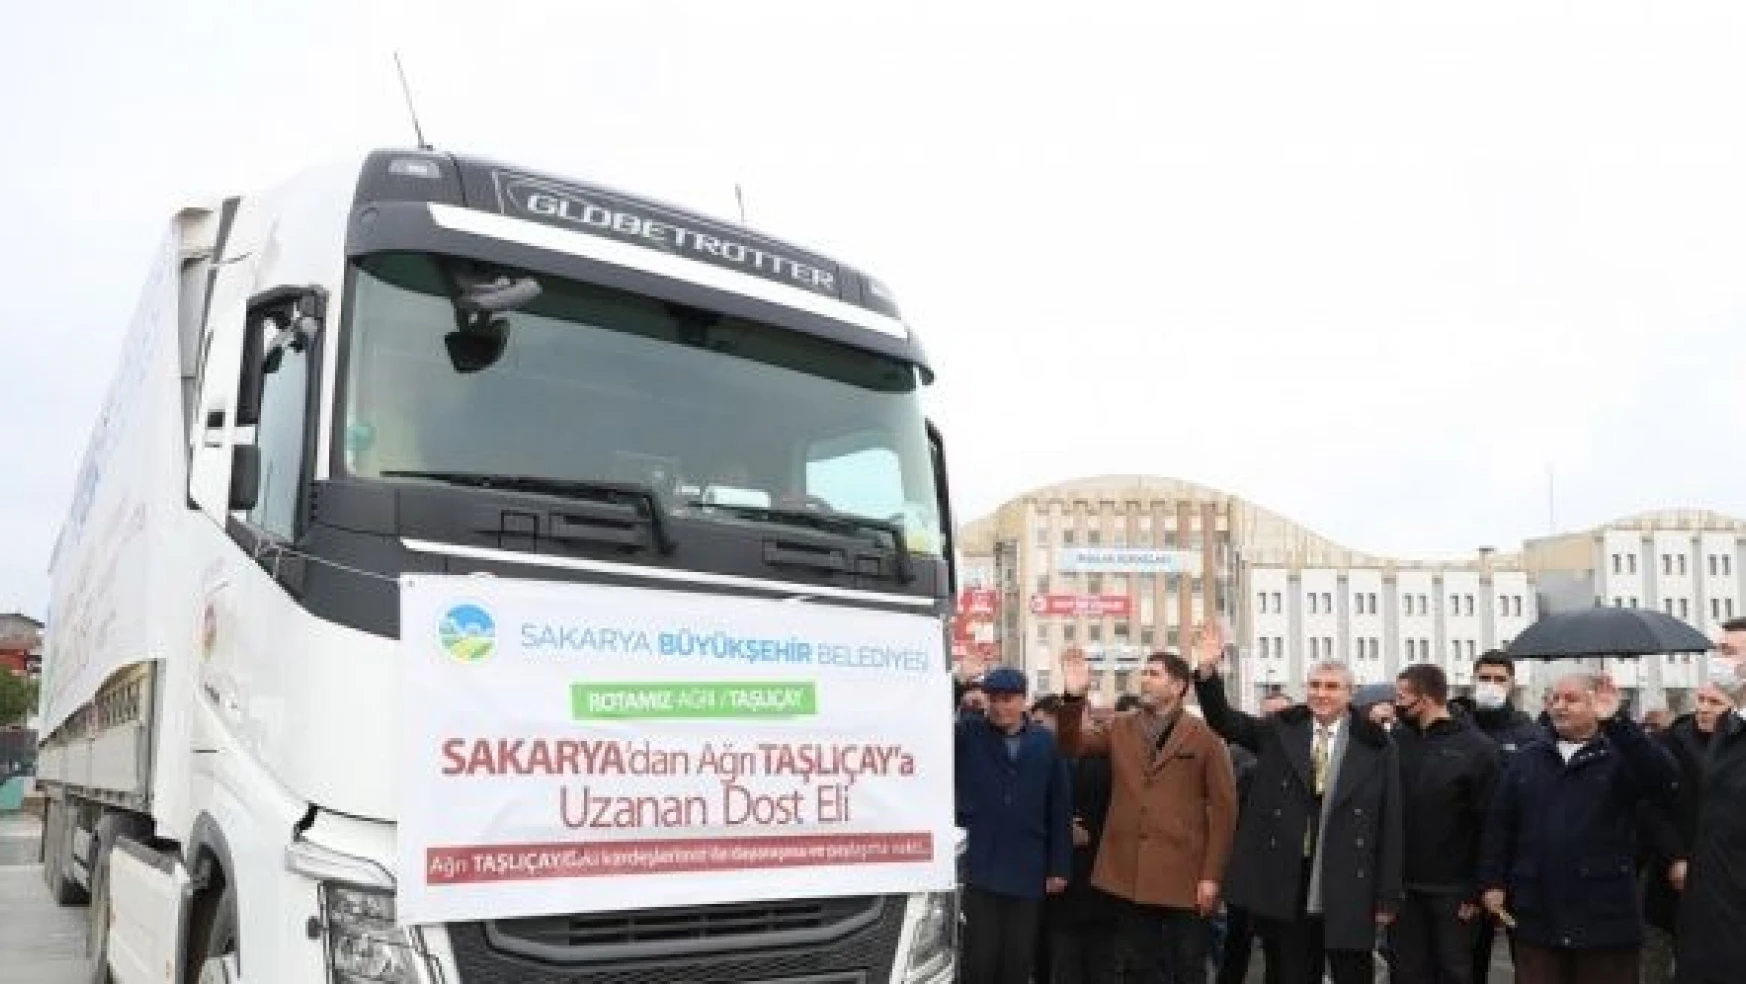 Sakarya Büyükşehir Belediyesi'nden Ağrı'ya yardım TIR'ı!